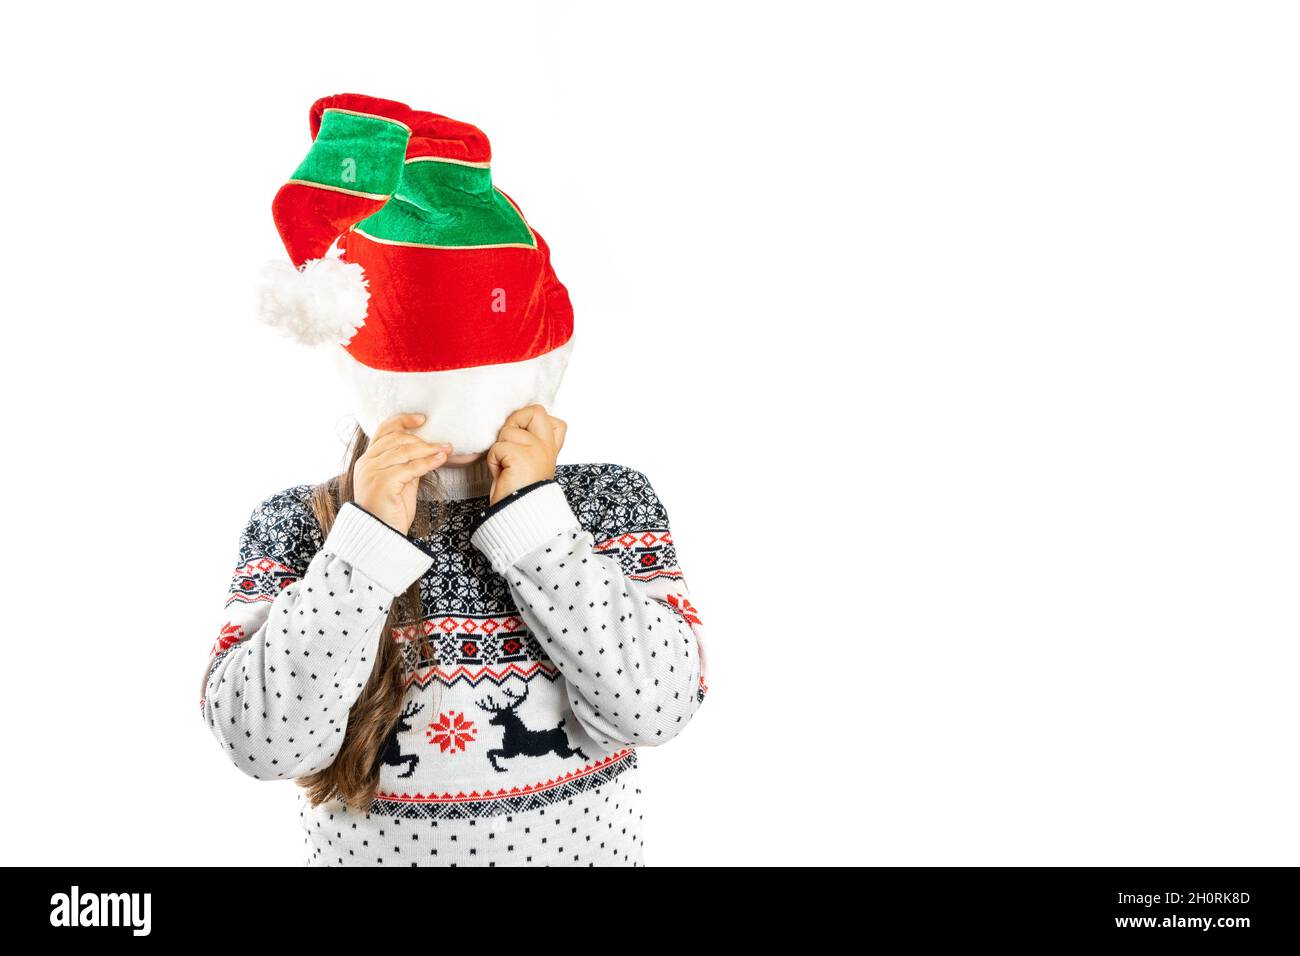 Enfant en tricot blanc chandail de Noël avec renne cache face sous un chapeau nain, isolé sur fond blanc Banque D'Images